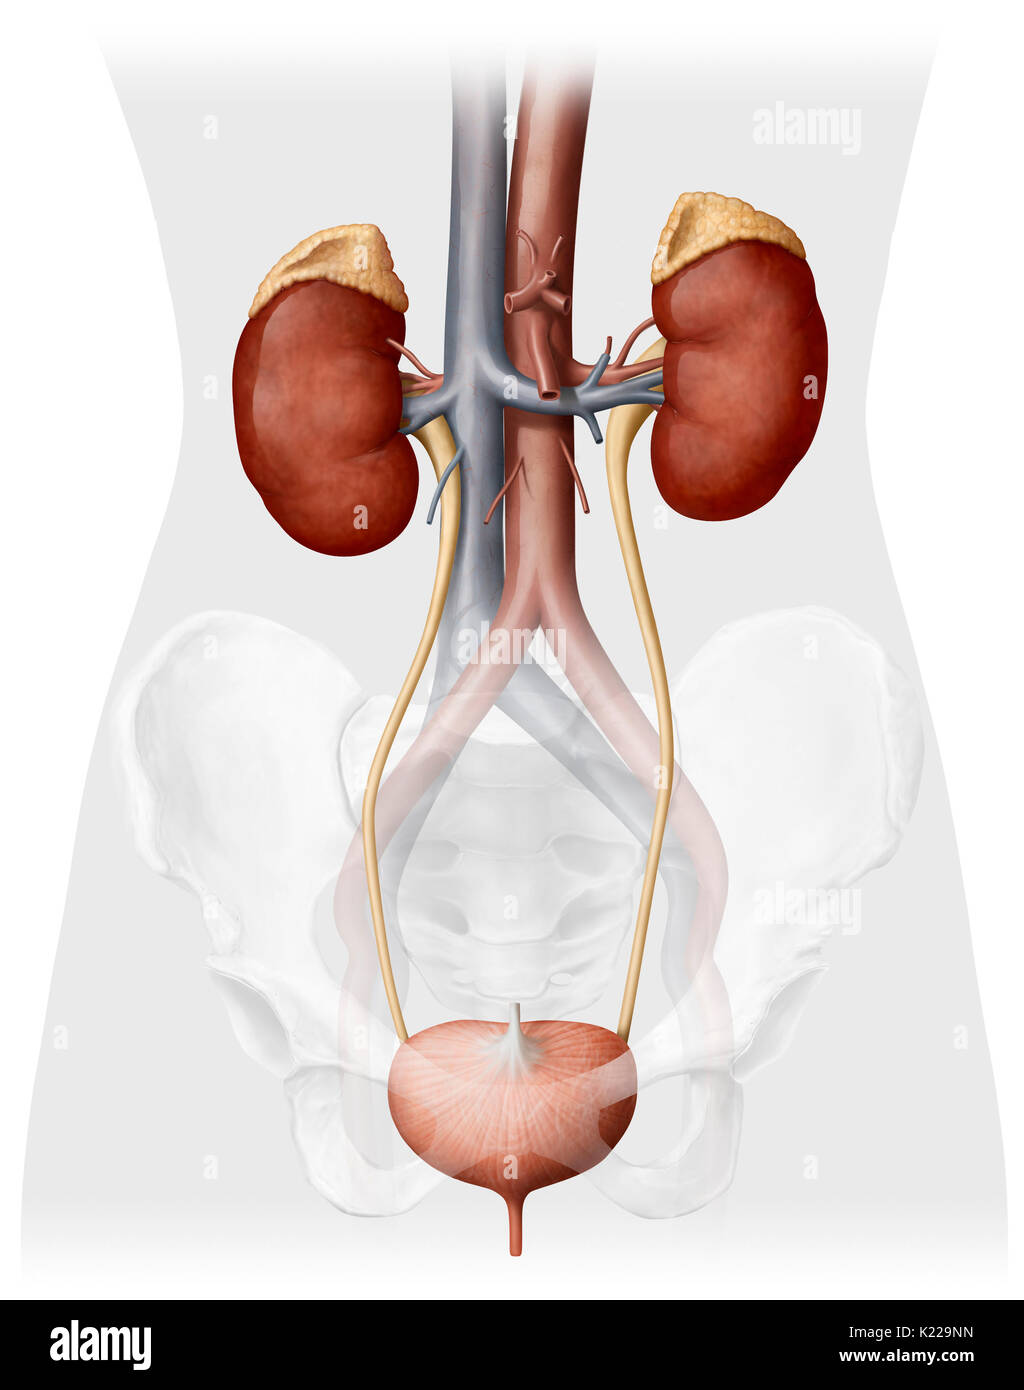 Dieses Bild zeigt die Harnwege von einer Frau, die die Nebenniere beinhaltet, der Nieren, der Harnleiter, der Harnblase und der Harnröhre. Es gibt auch die Aorta und der Vena cava inferior. Stockfoto